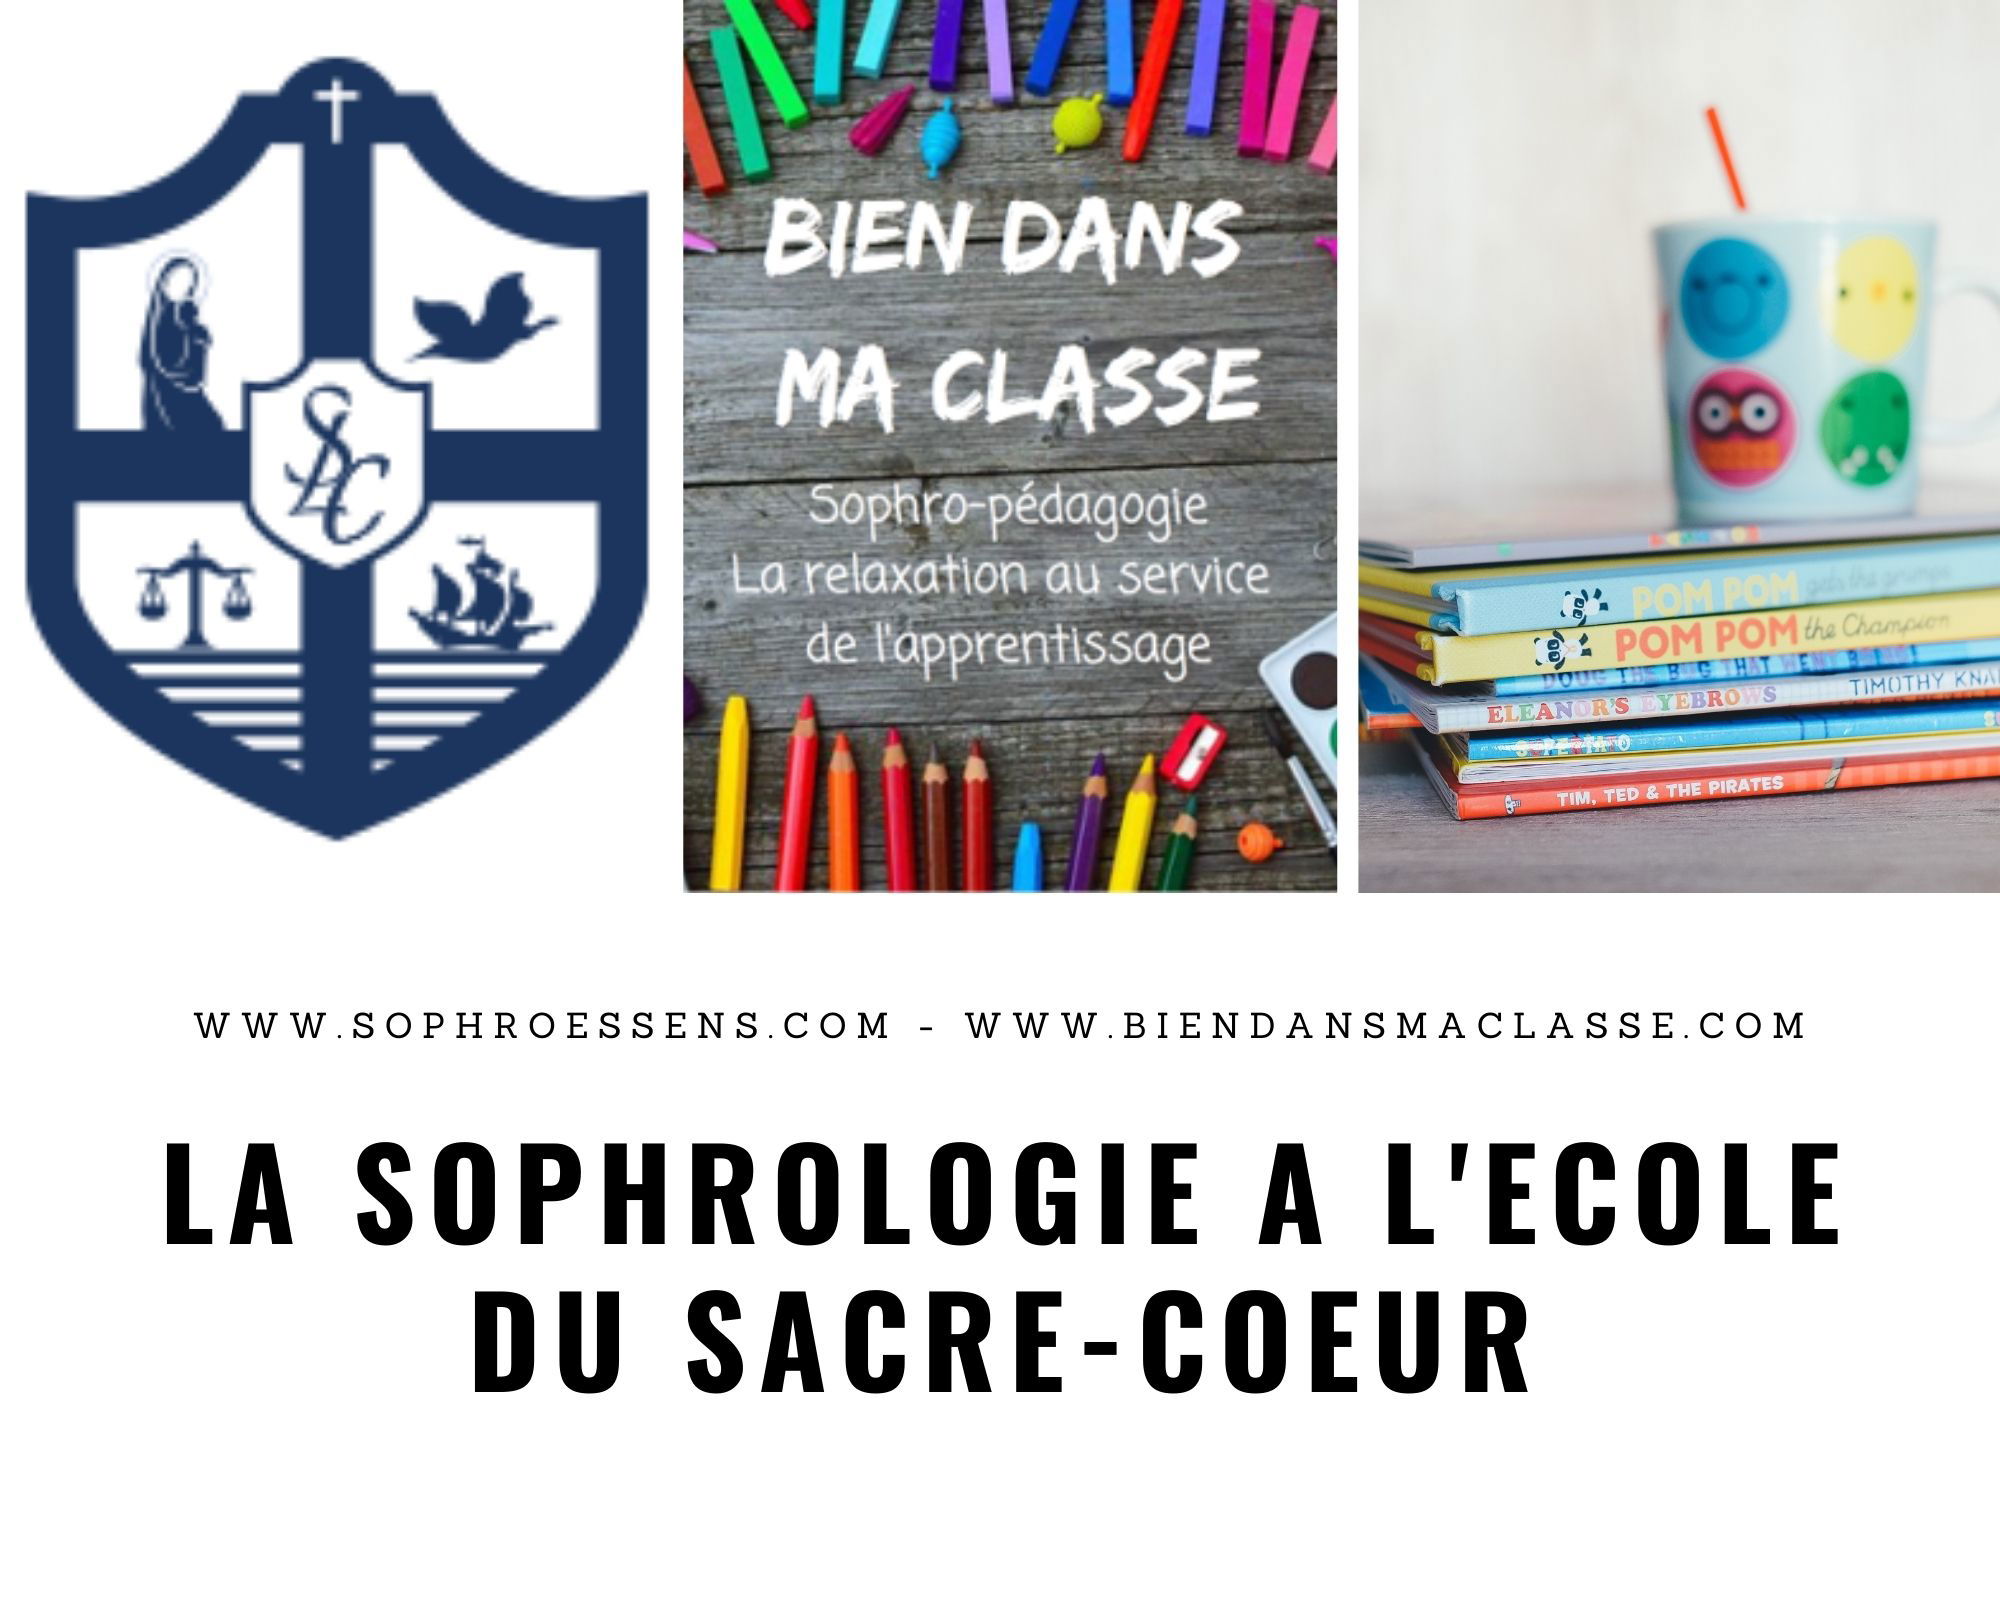 De la Sophrologie à l’école Sacré-Cœur de Savigny-sur-Orge